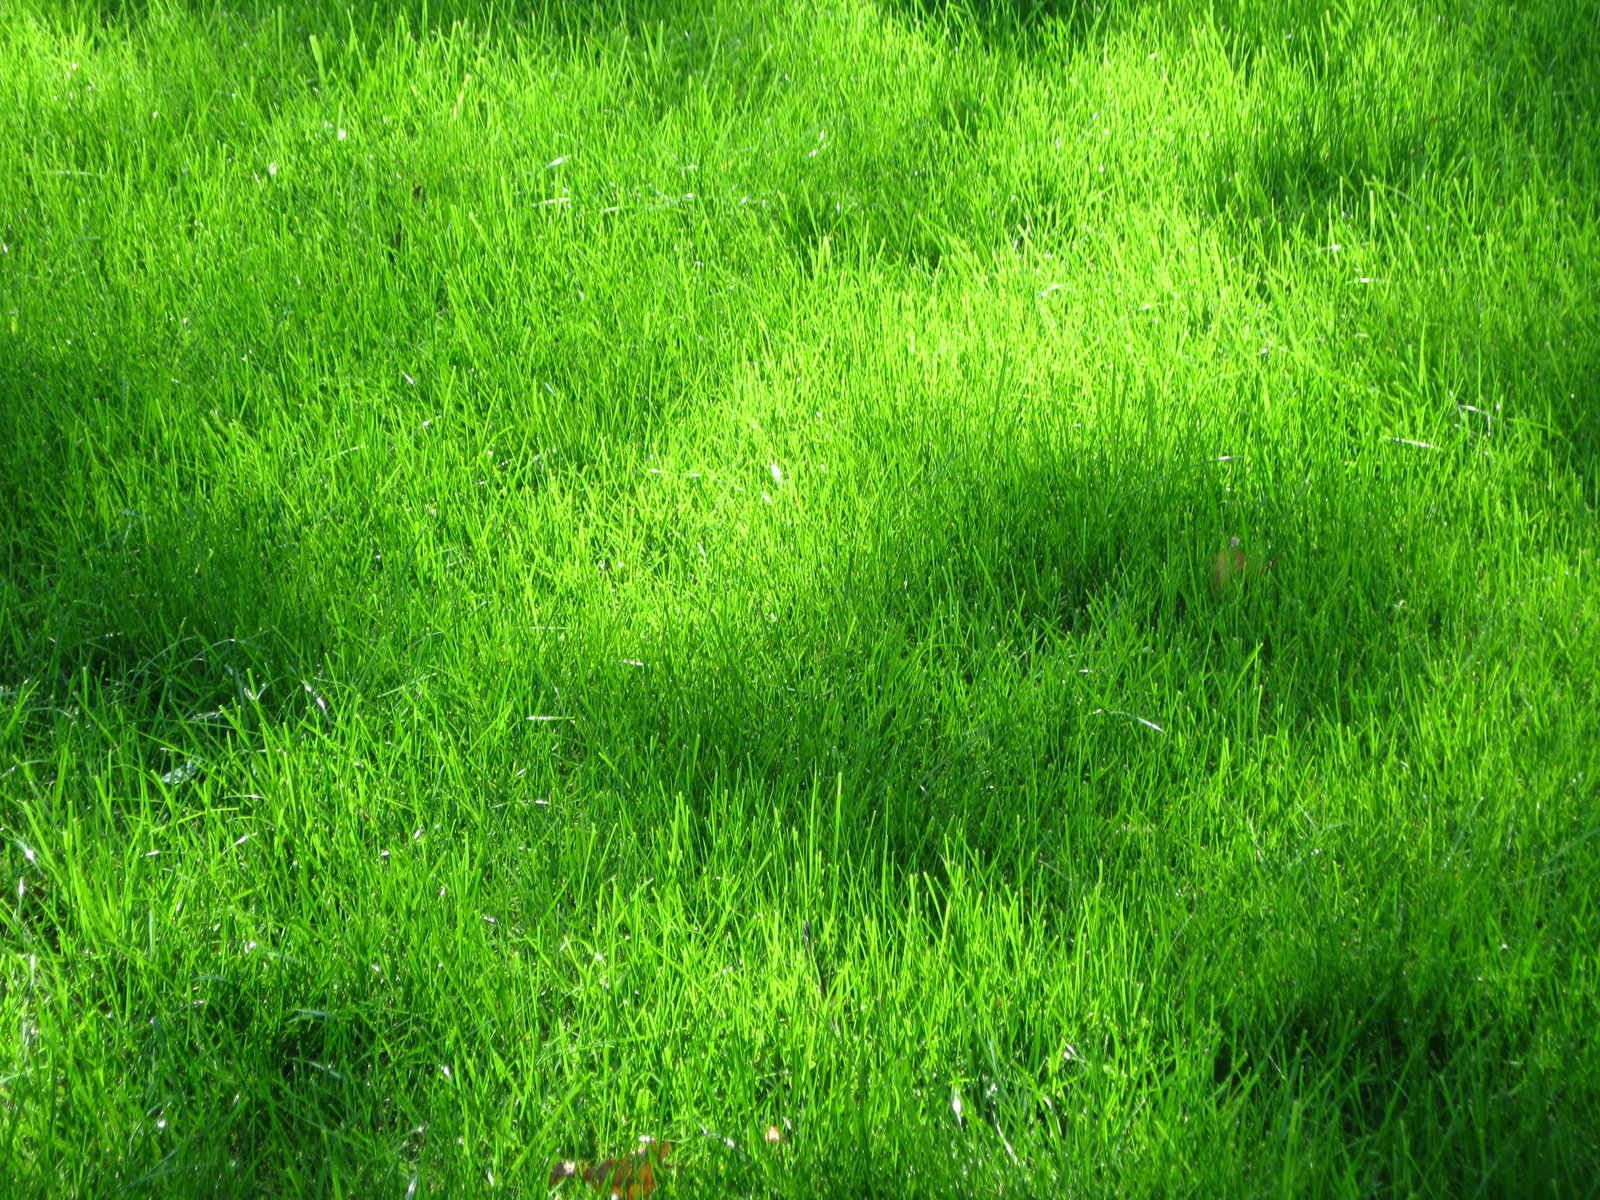 green grass texture, texture download photo, background, green grass